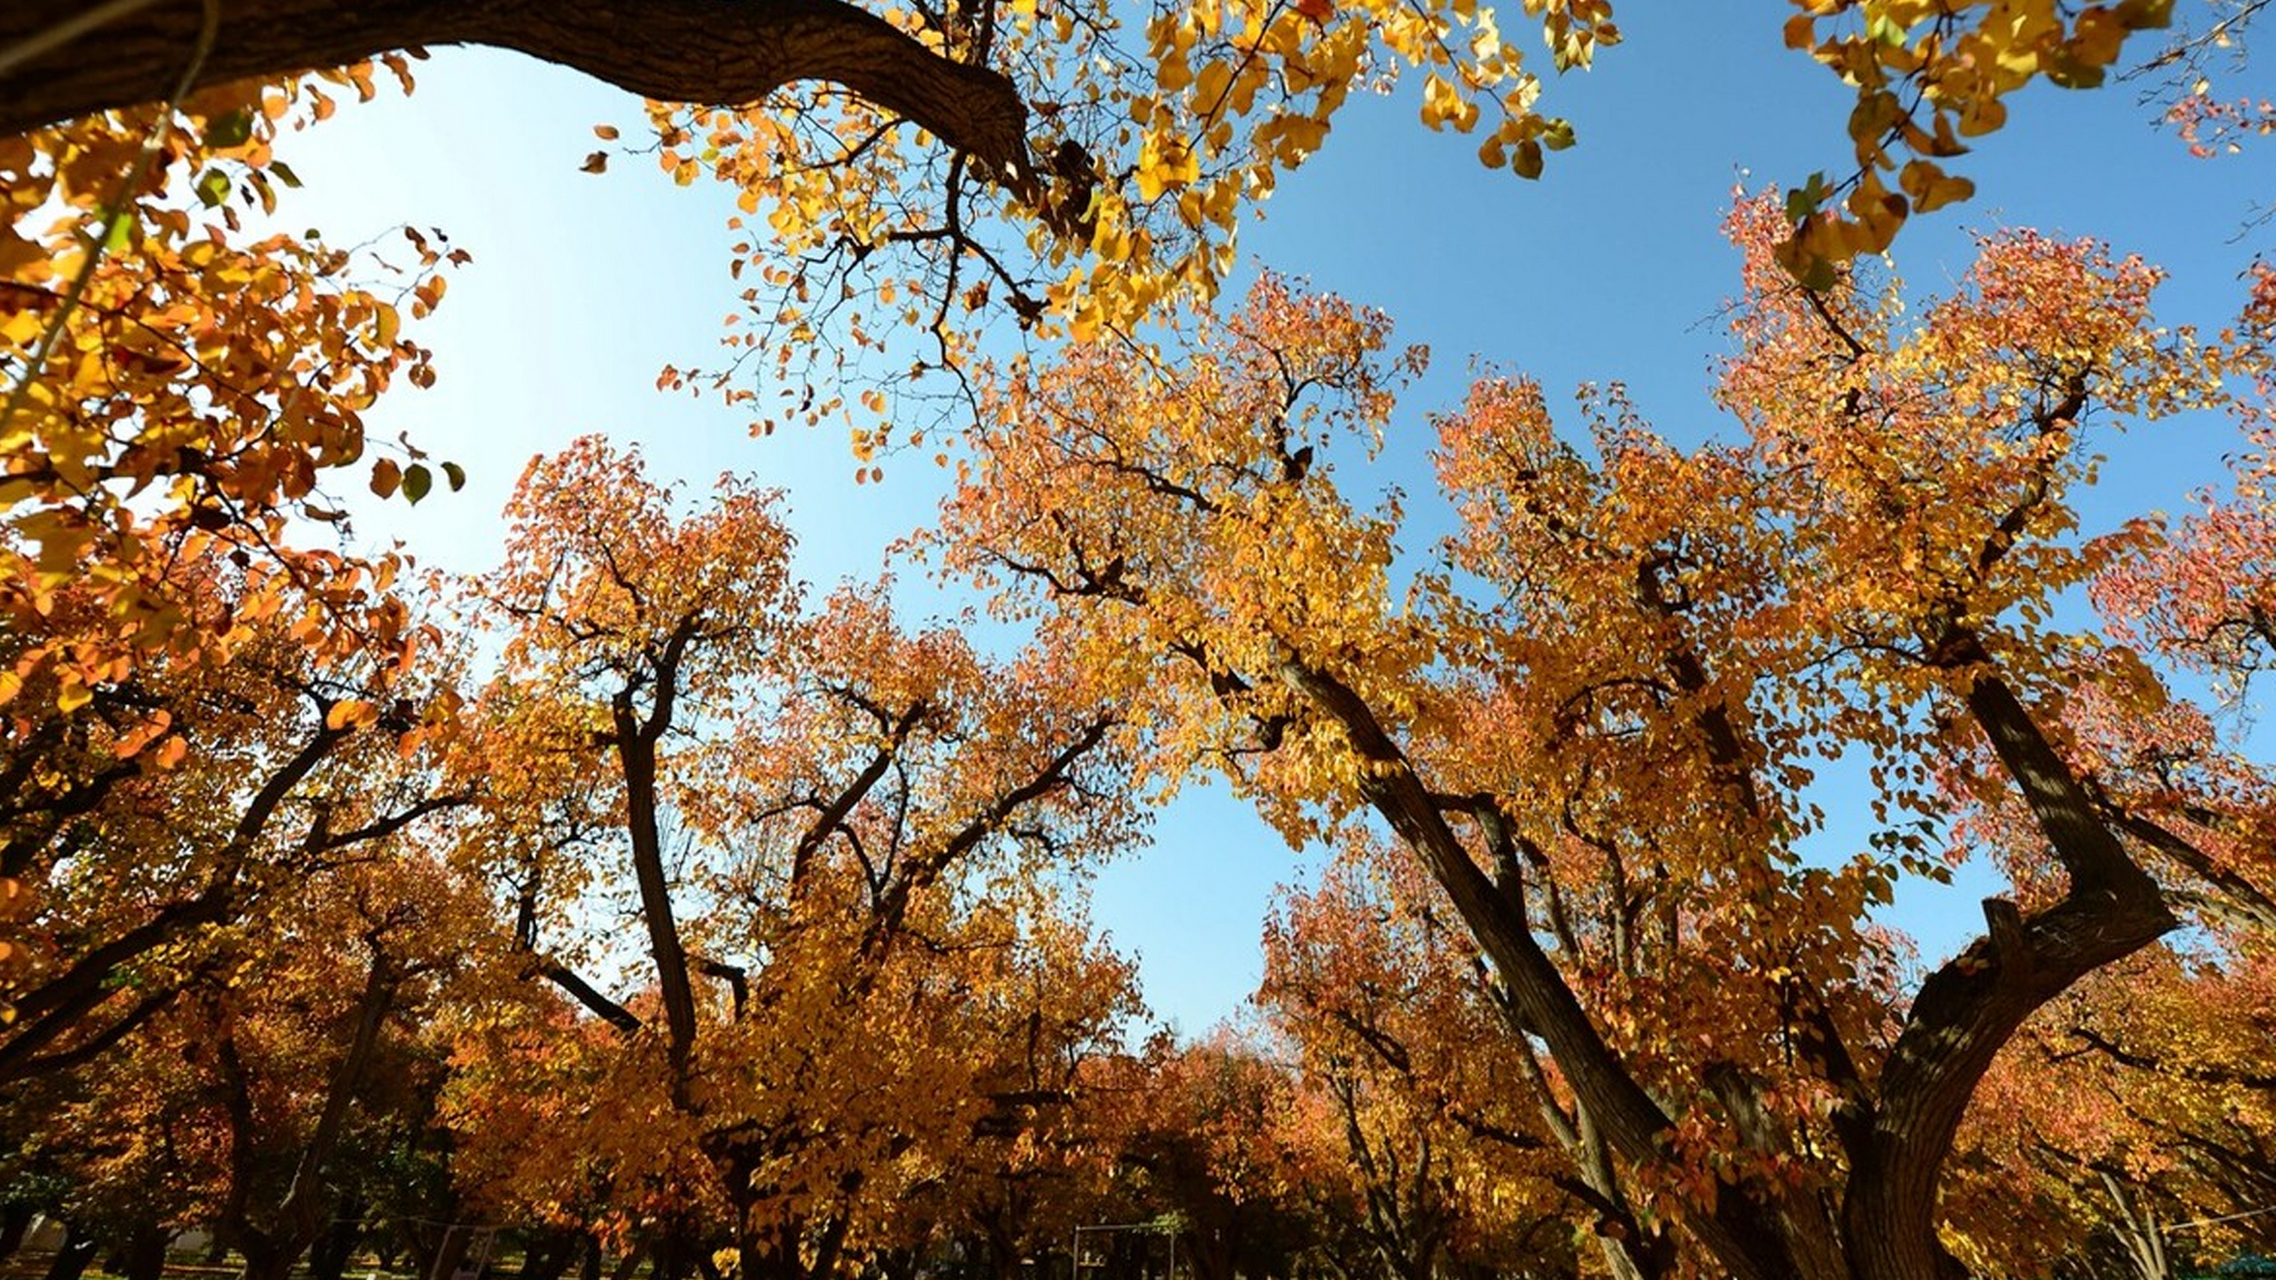 甘肃皋兰县的世界第一古梨园内,9432棵百年以上树龄的古梨树红叶似